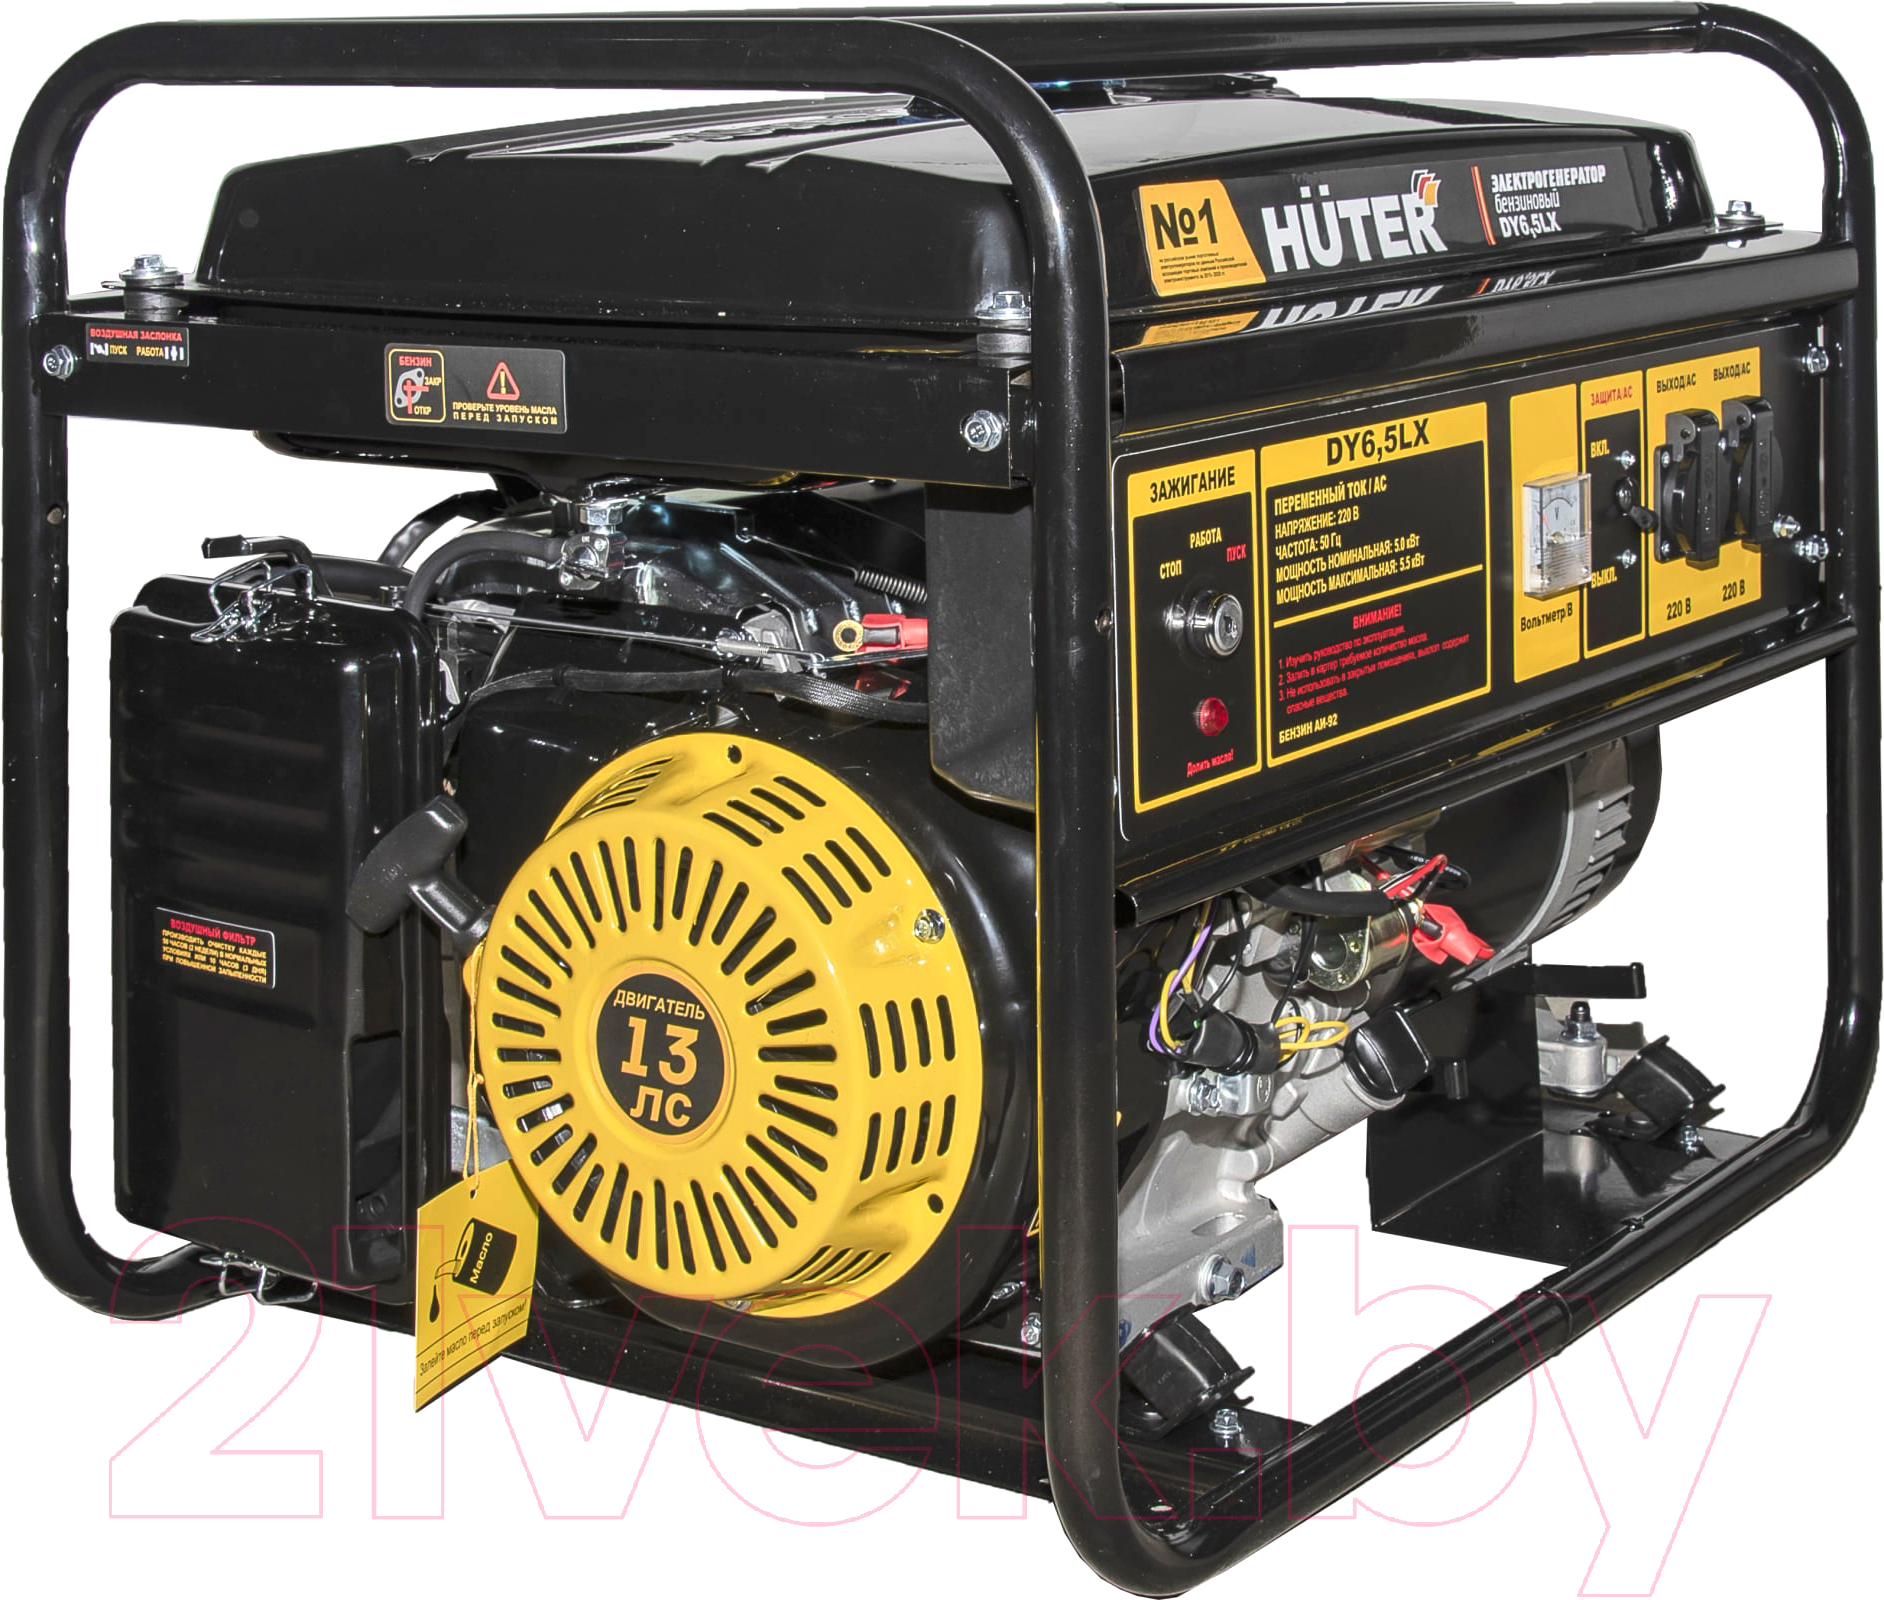 Бензиновый генератор Huter DY6.5LX-Электростартер